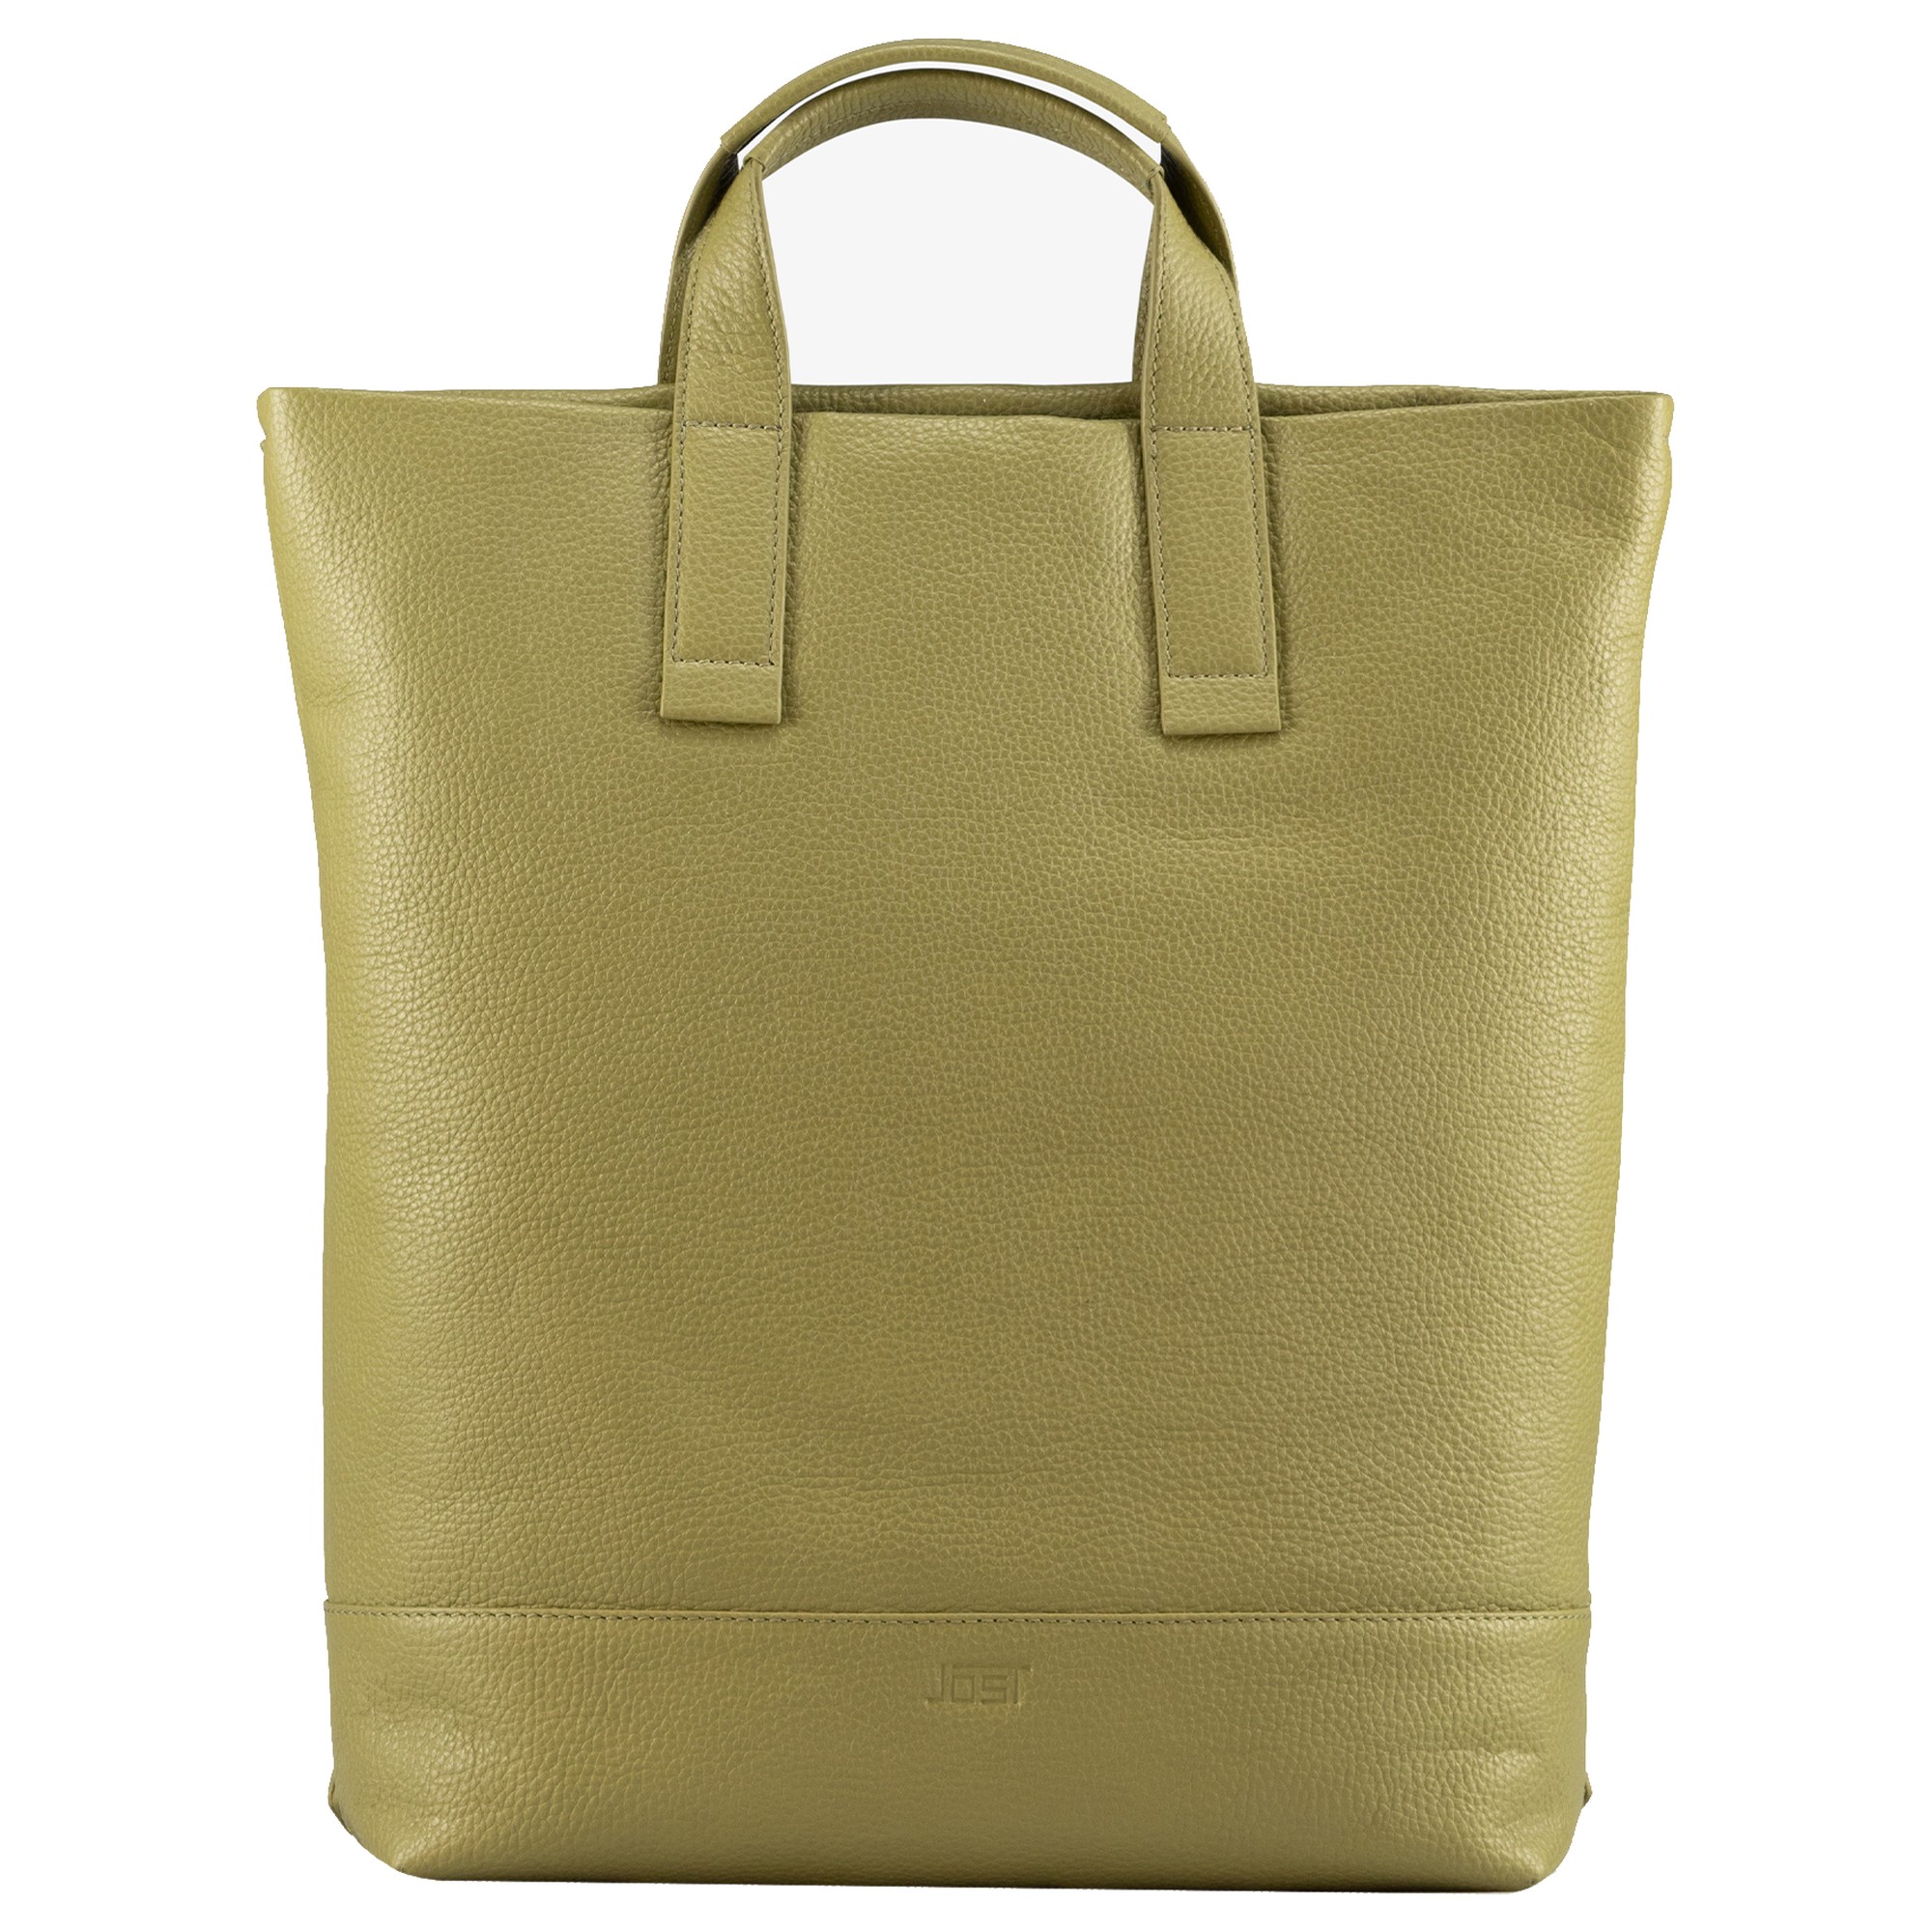 Рюкзак Jost Vika X Change Bag S 40 cm, оливковый